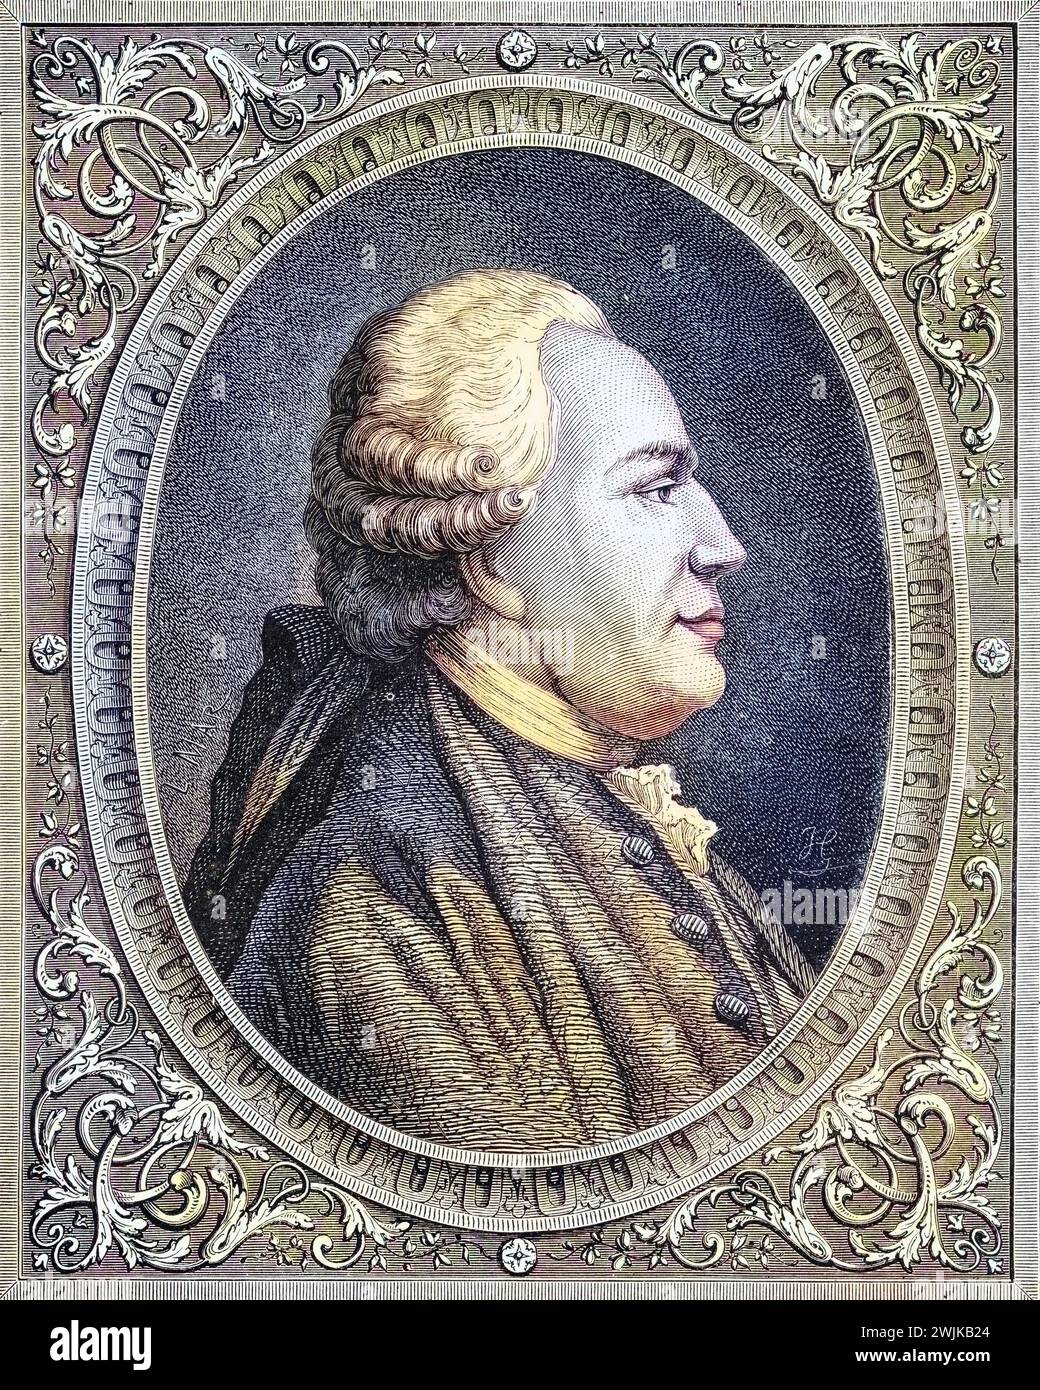 Franz Anton Mesmer, auch Friedrich Anton Mesmer (geb. 23. Mai 1734 in Iznang; Std. 5. März 1815 in Meersburg) war ein deutscher Arzt, Historisch, digital restaurierte Reproduktion von einer Vorlage aus dem 19. Jahrhundert, Datum nicht angegeben Stockfoto